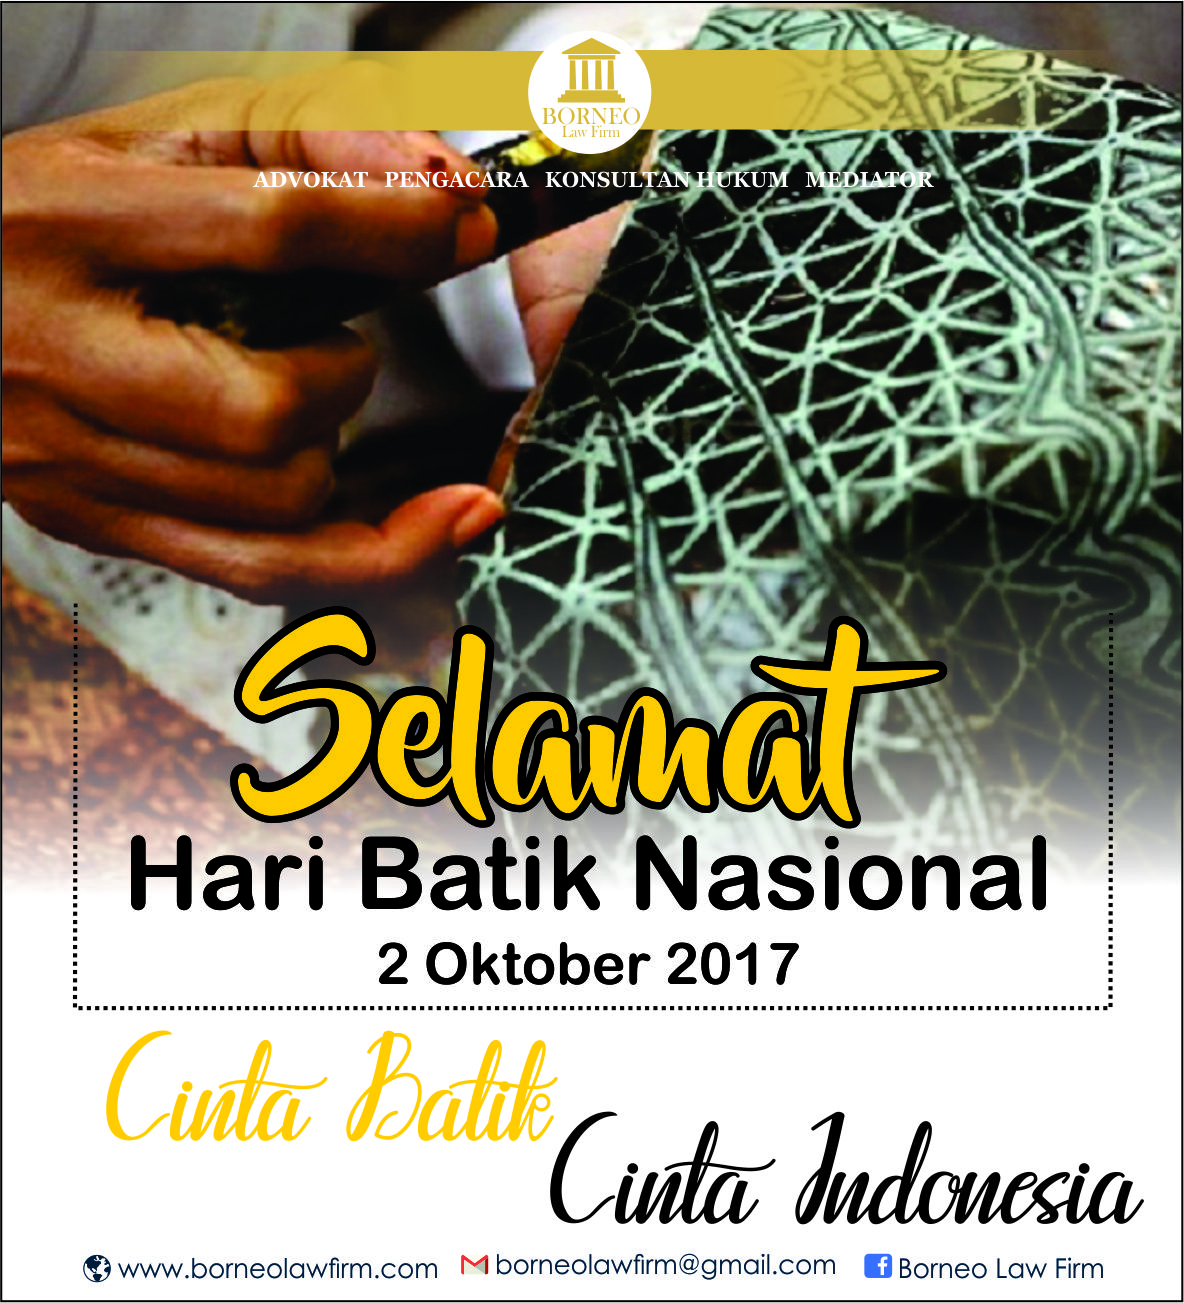 Penetapan tanggal 2 oktober sebagai hari batik nasional memiliki makna